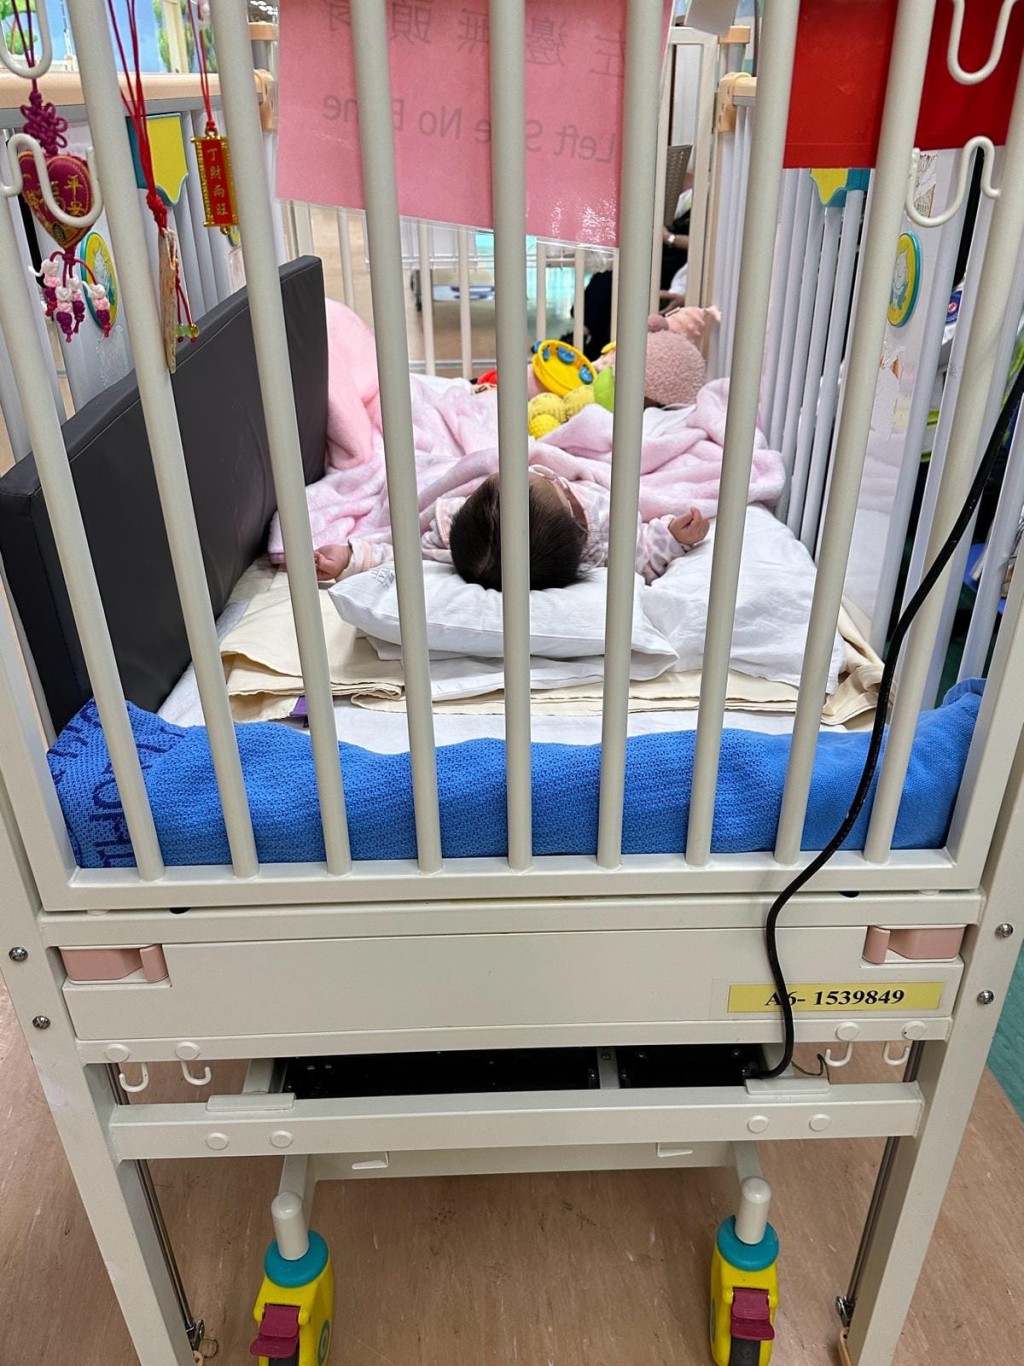 小雪兒早前接受腦部手術。香港關懷力量FB圖片